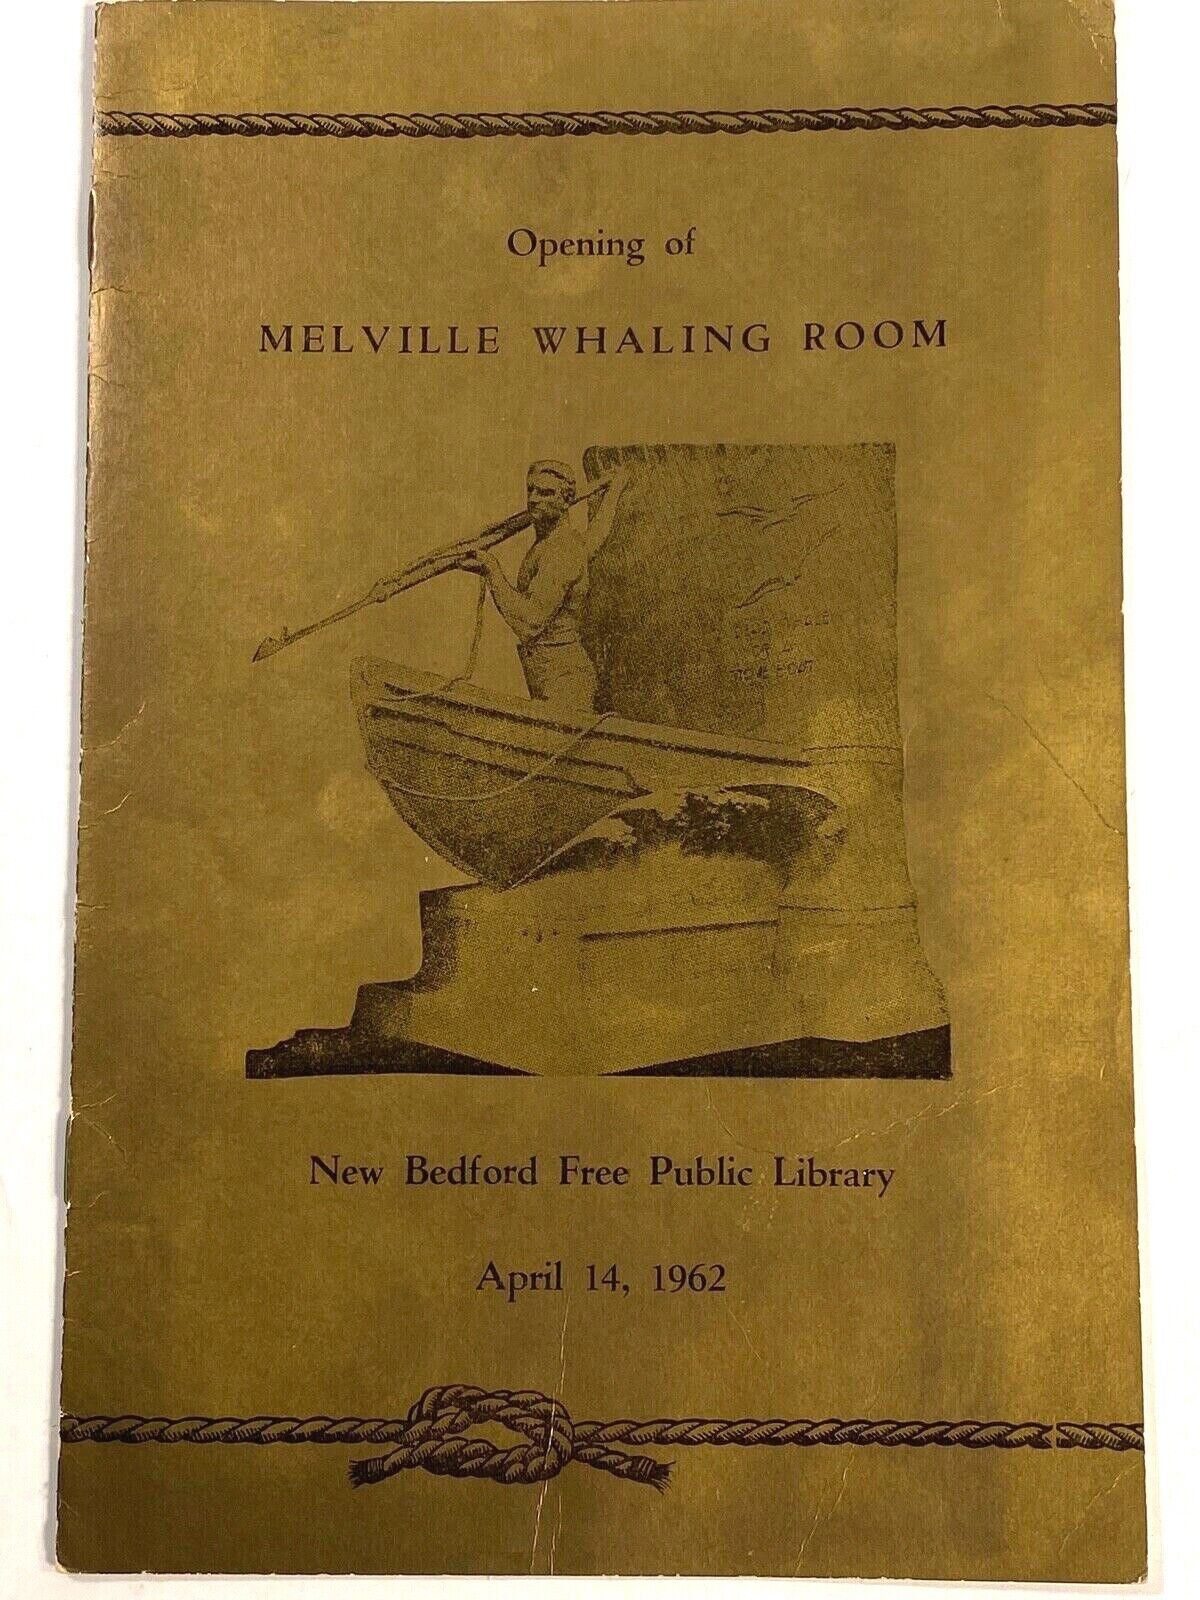 1962 HERMAN MELVILLE WHALING ROOM vtg grand opening program NEW BEDFORD LIBRARY